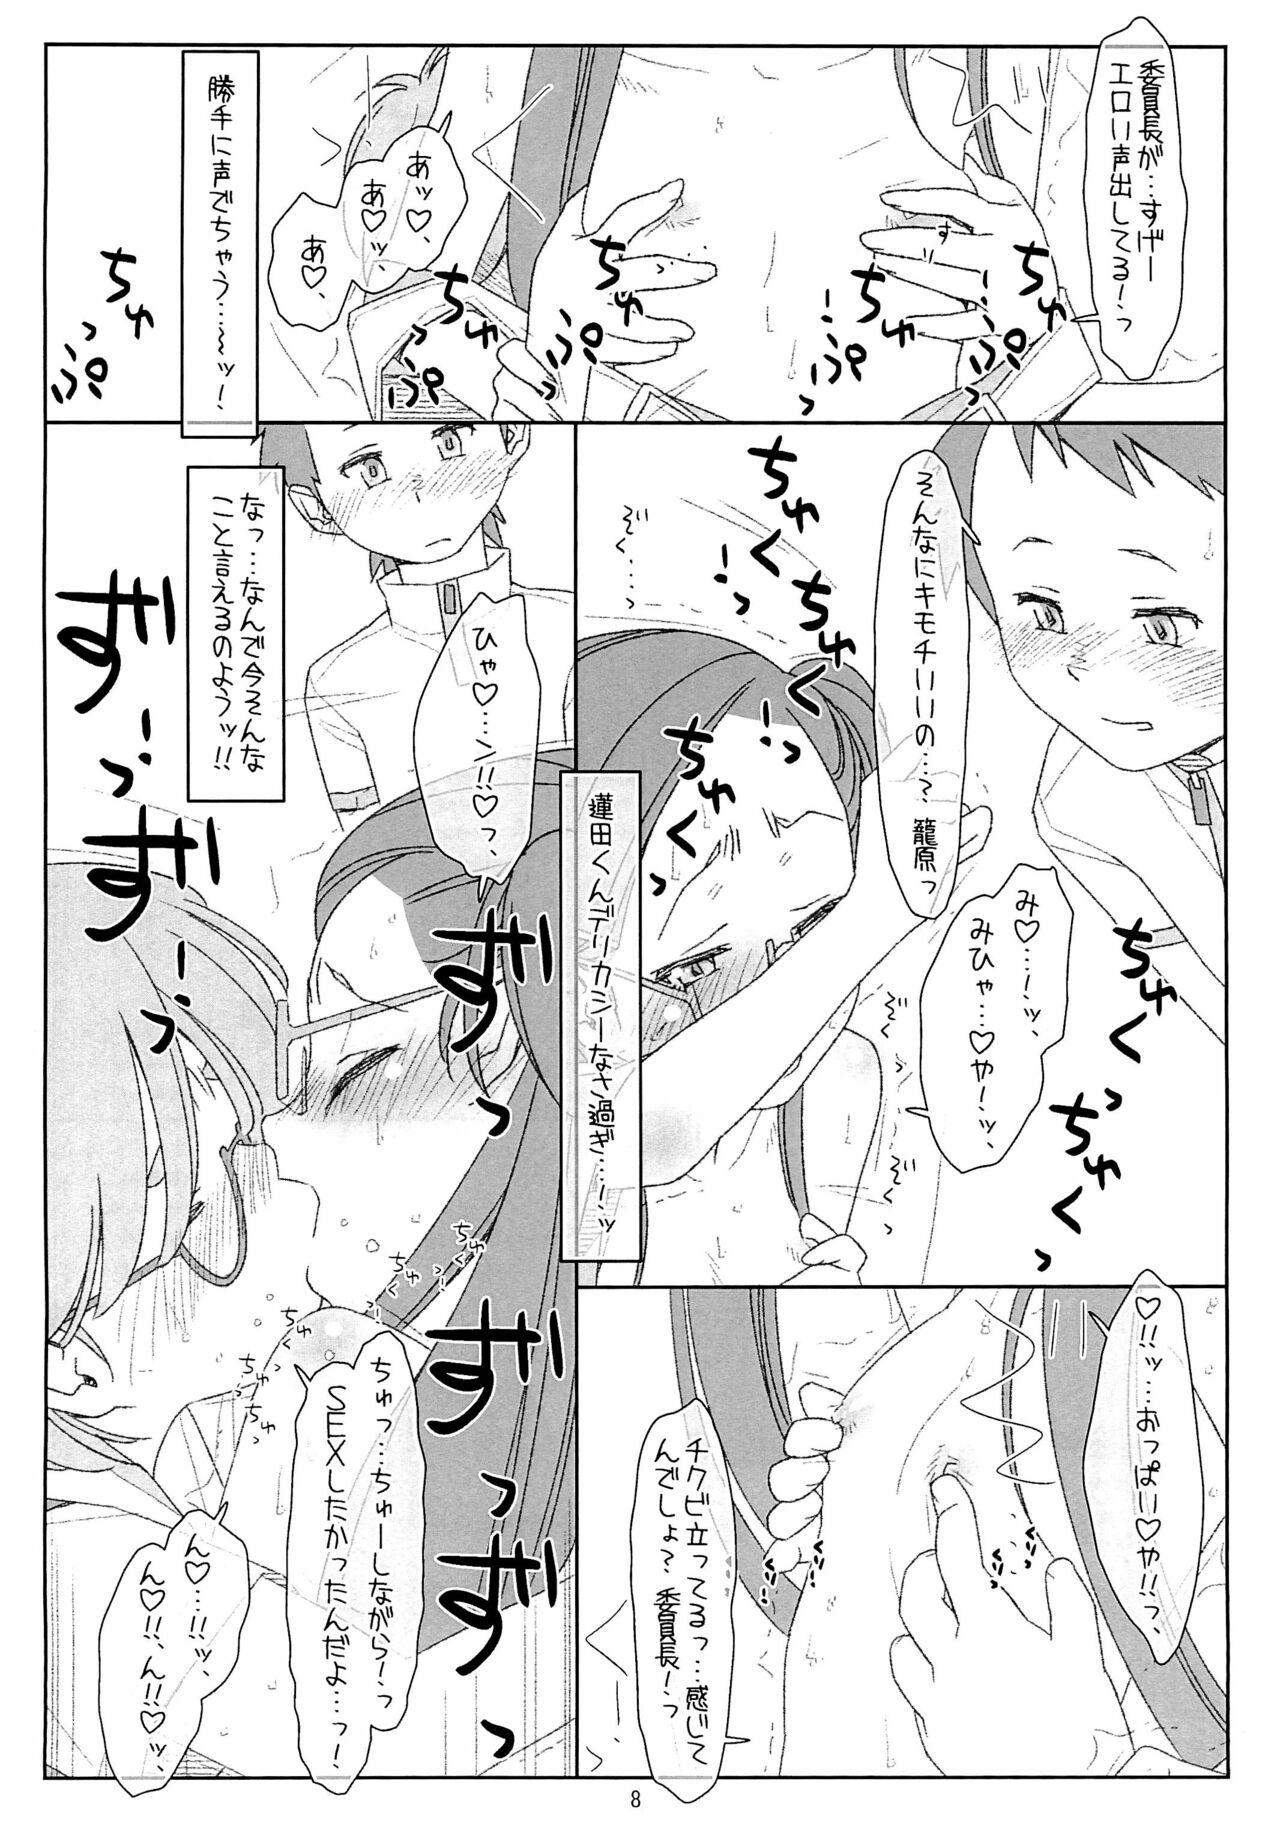 Caseiro "Bokutachi no Super App" 4 preview ver.2 - Original Femboy - Page 8